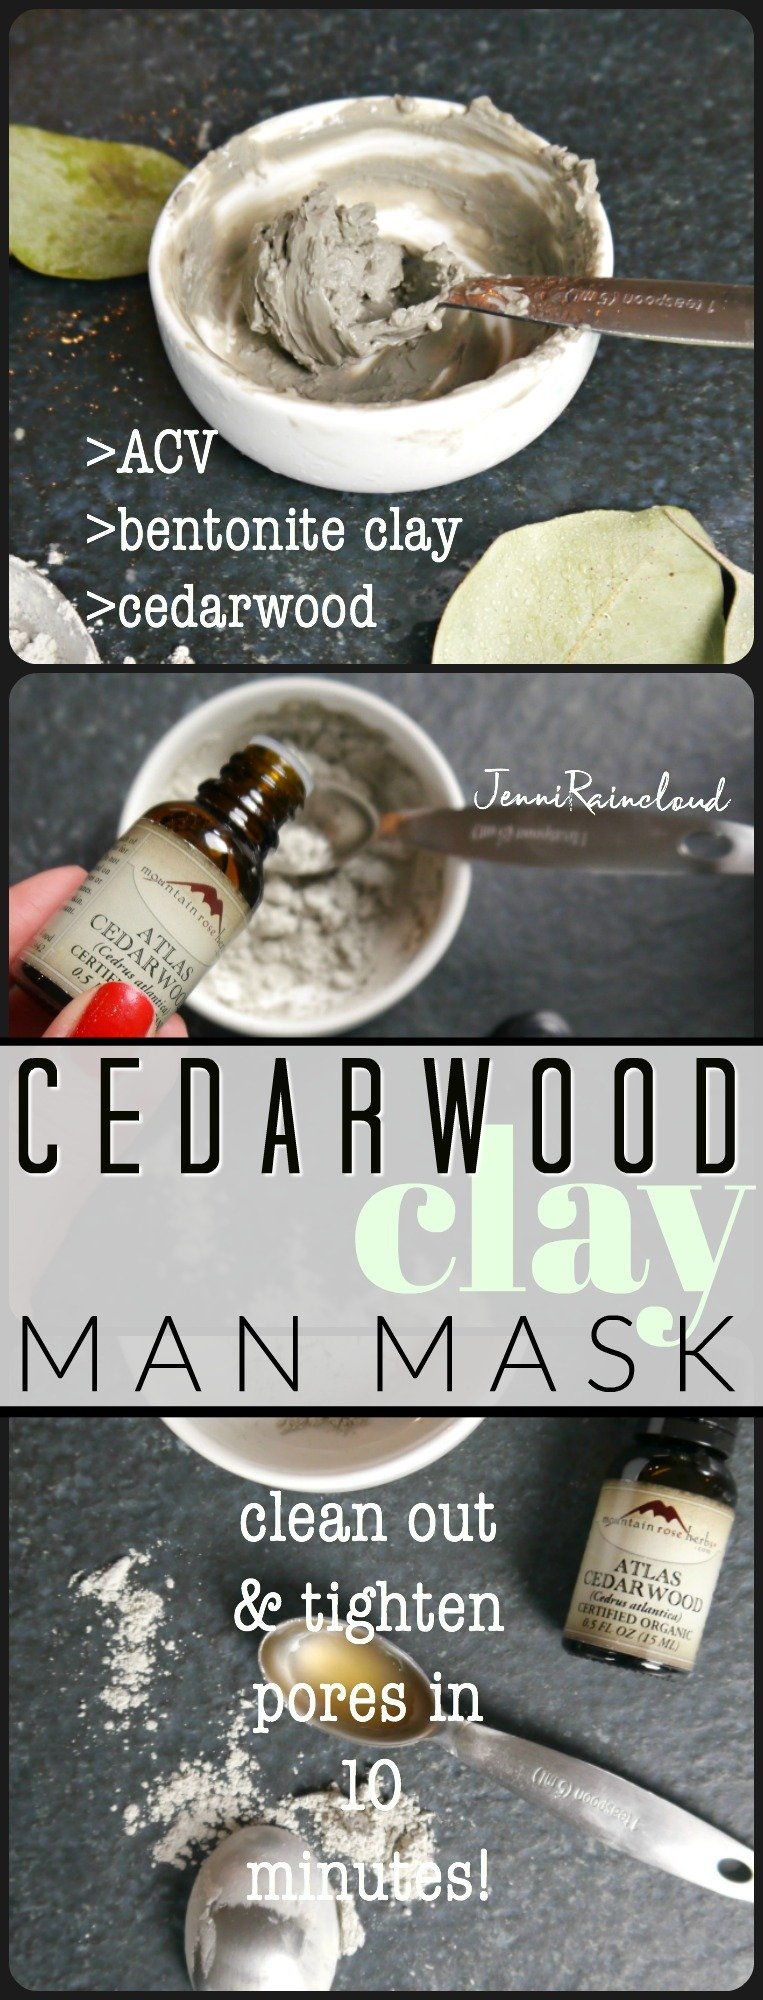 DIY Cedarwood Clay Mask